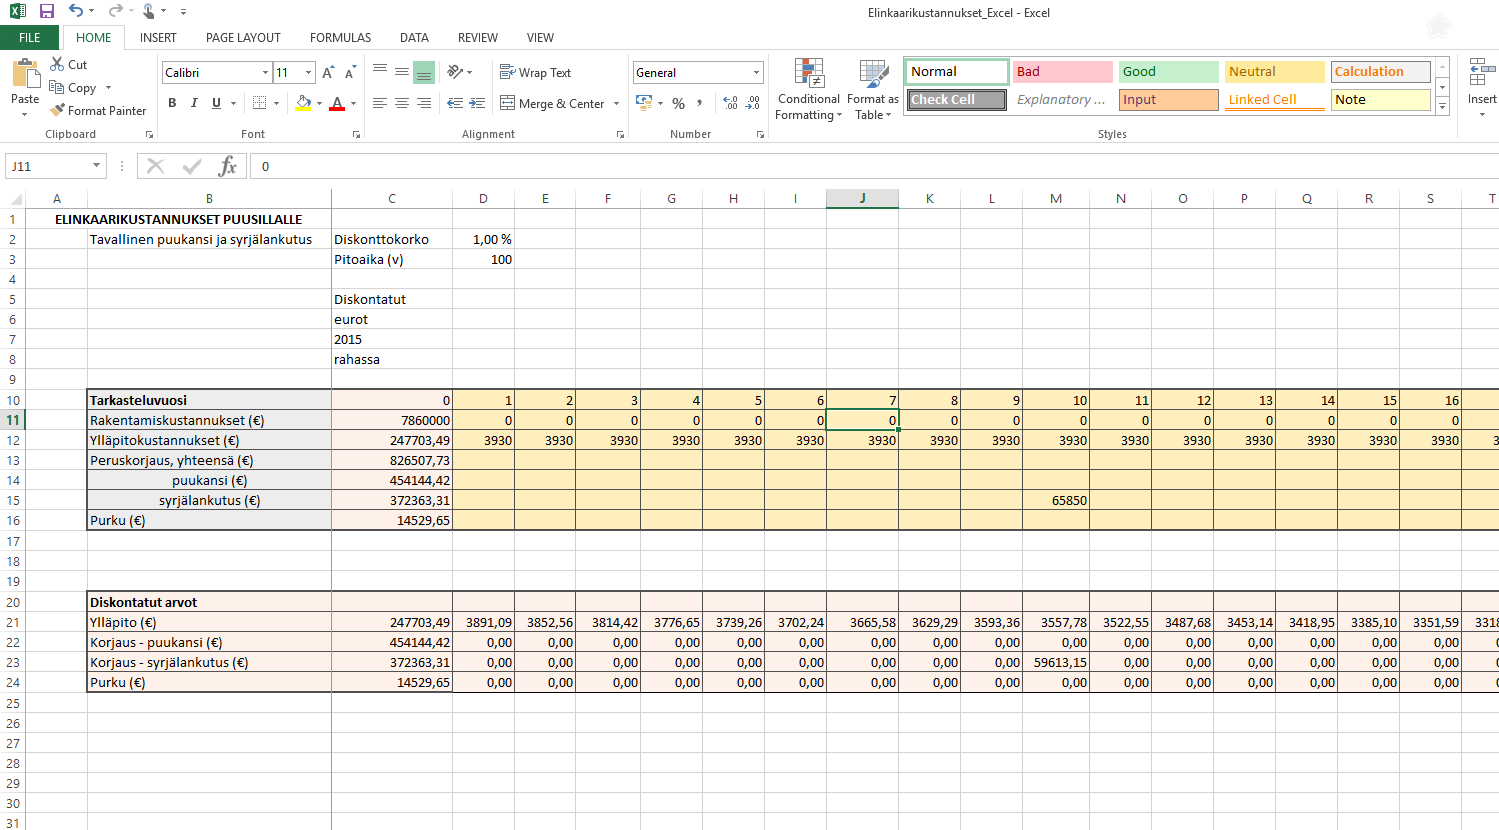 20 Exceliin tehtiin taulukko, jossa on jokaiselle vuodelle oma sarake, johon on merkitty kyseisen vuoden korjaus- ja ylläpitokustannukset.